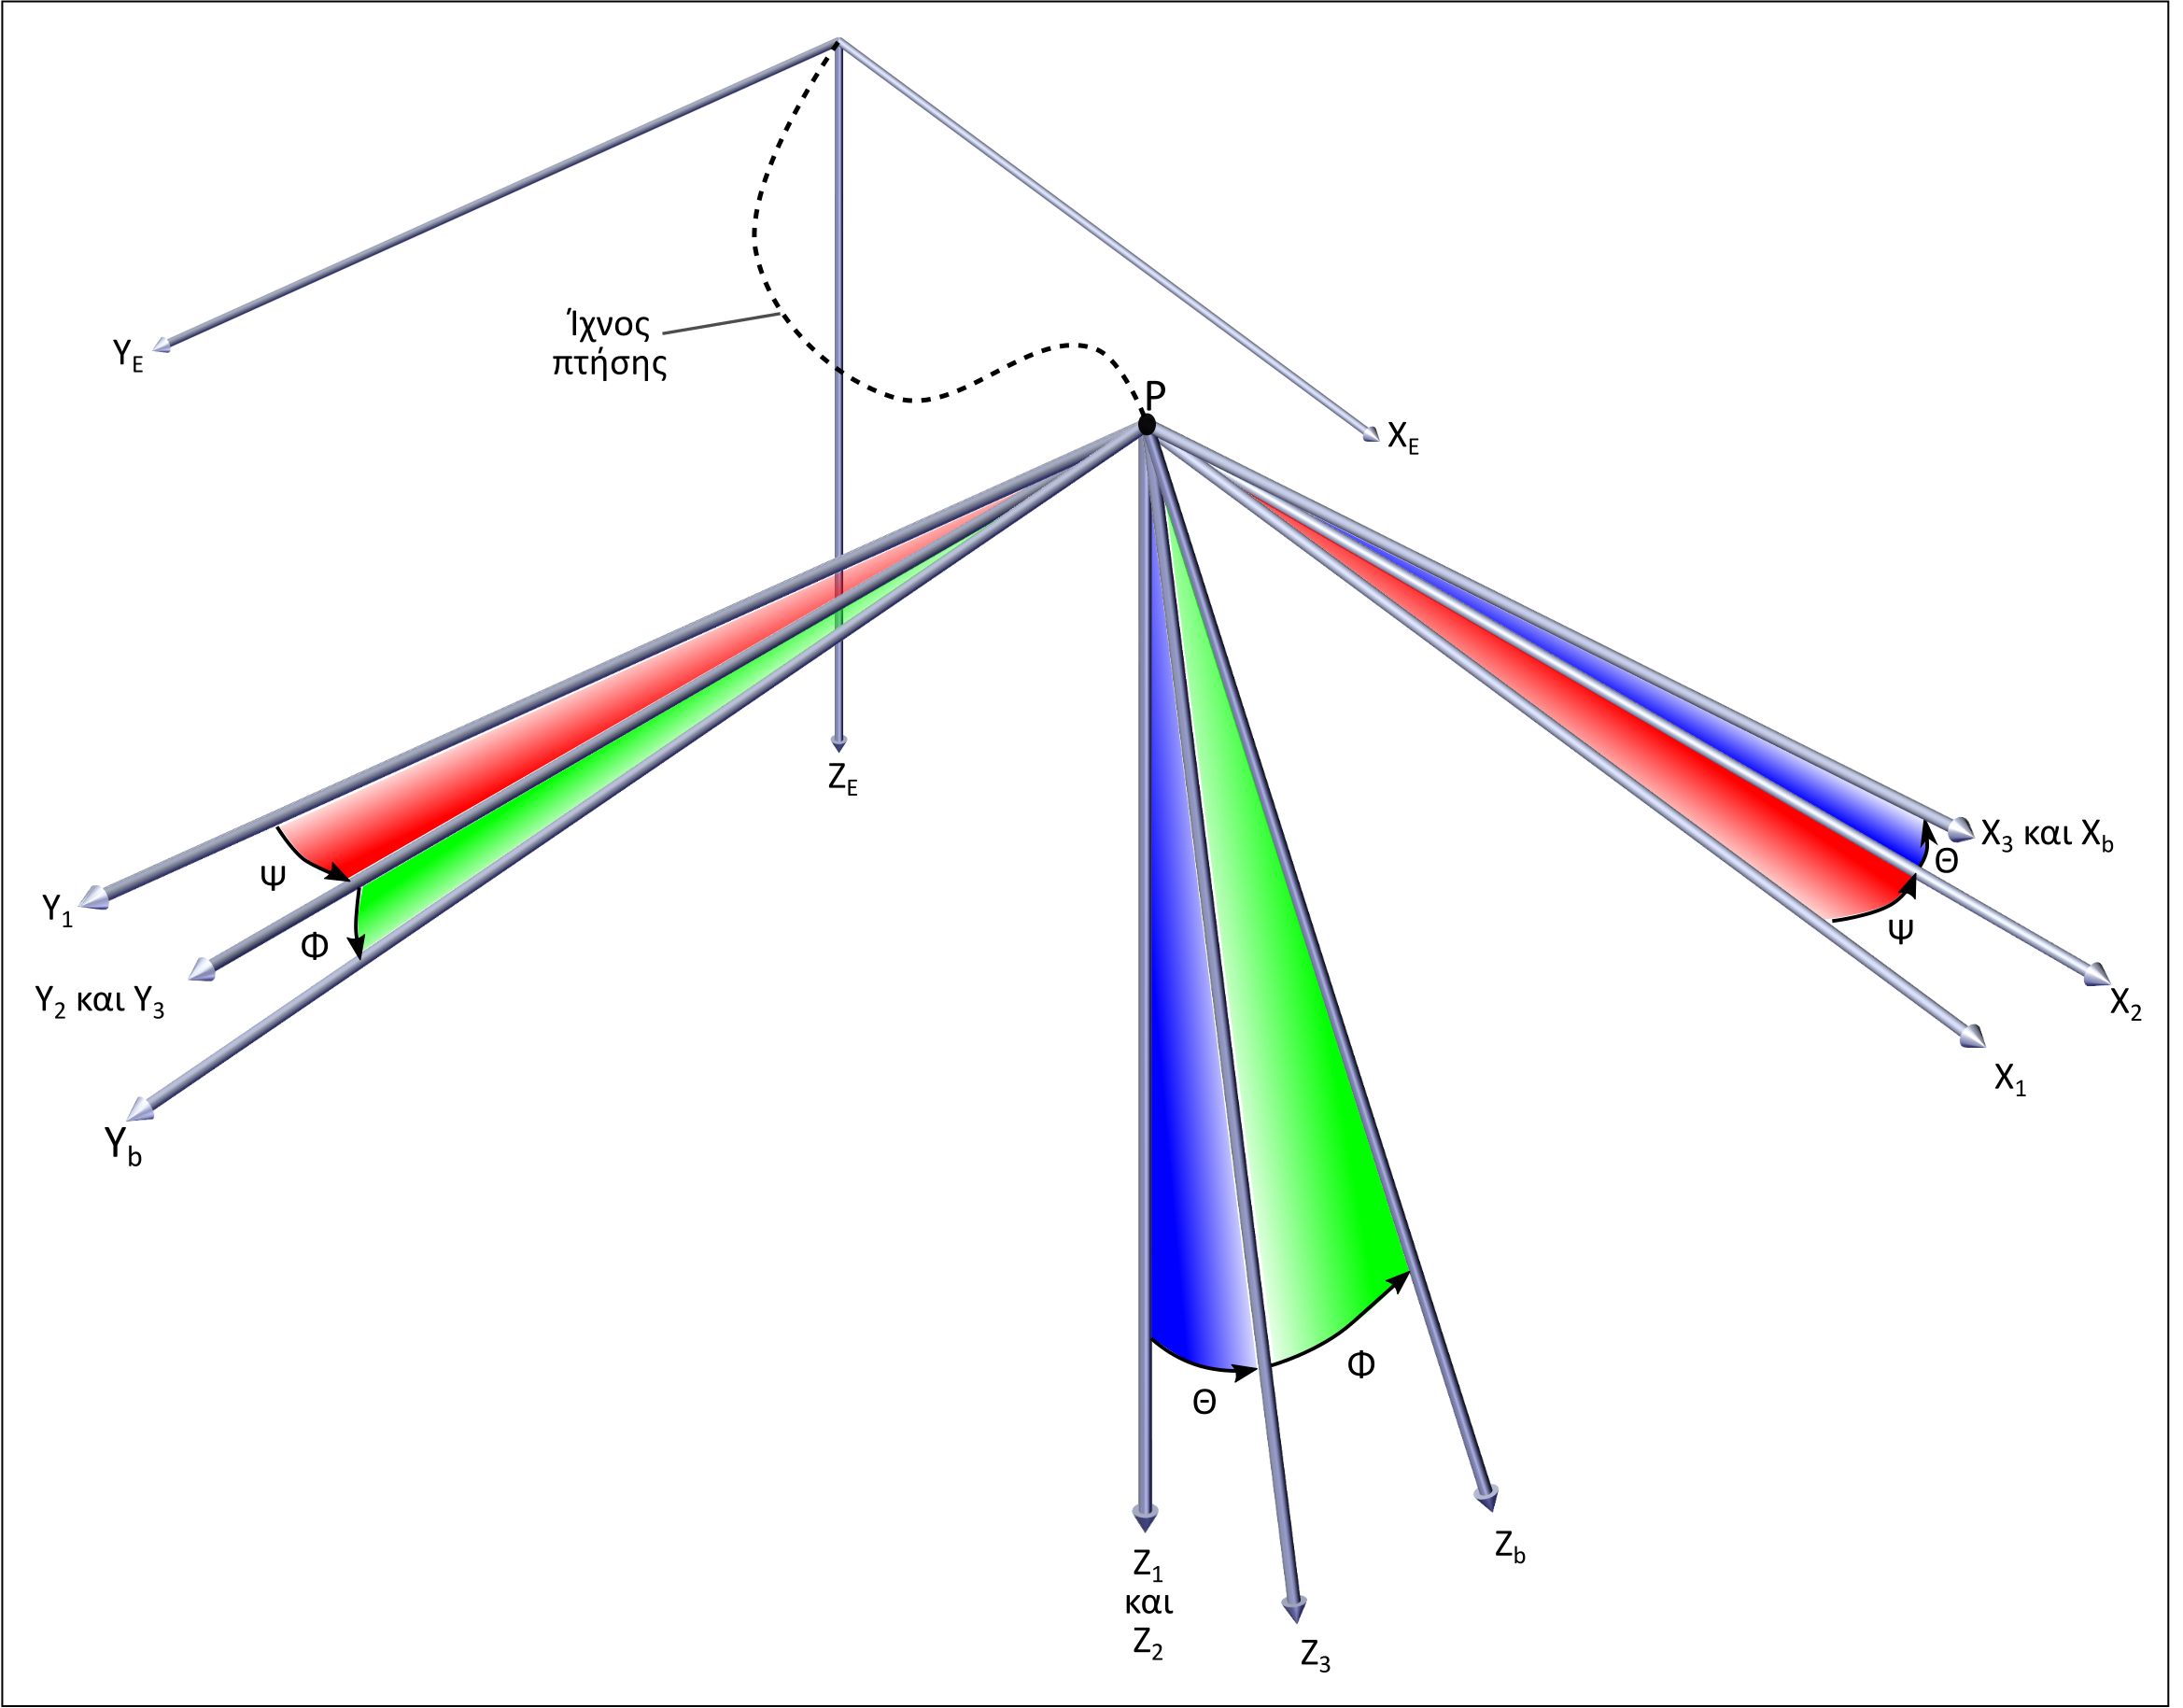 Η εικόνα δεν εμφανίζεται/Image is not displayed - Γωνίες Euler - Μετασχηματισμός συντεταγμένων / Euler angles, aircraft axis transformation